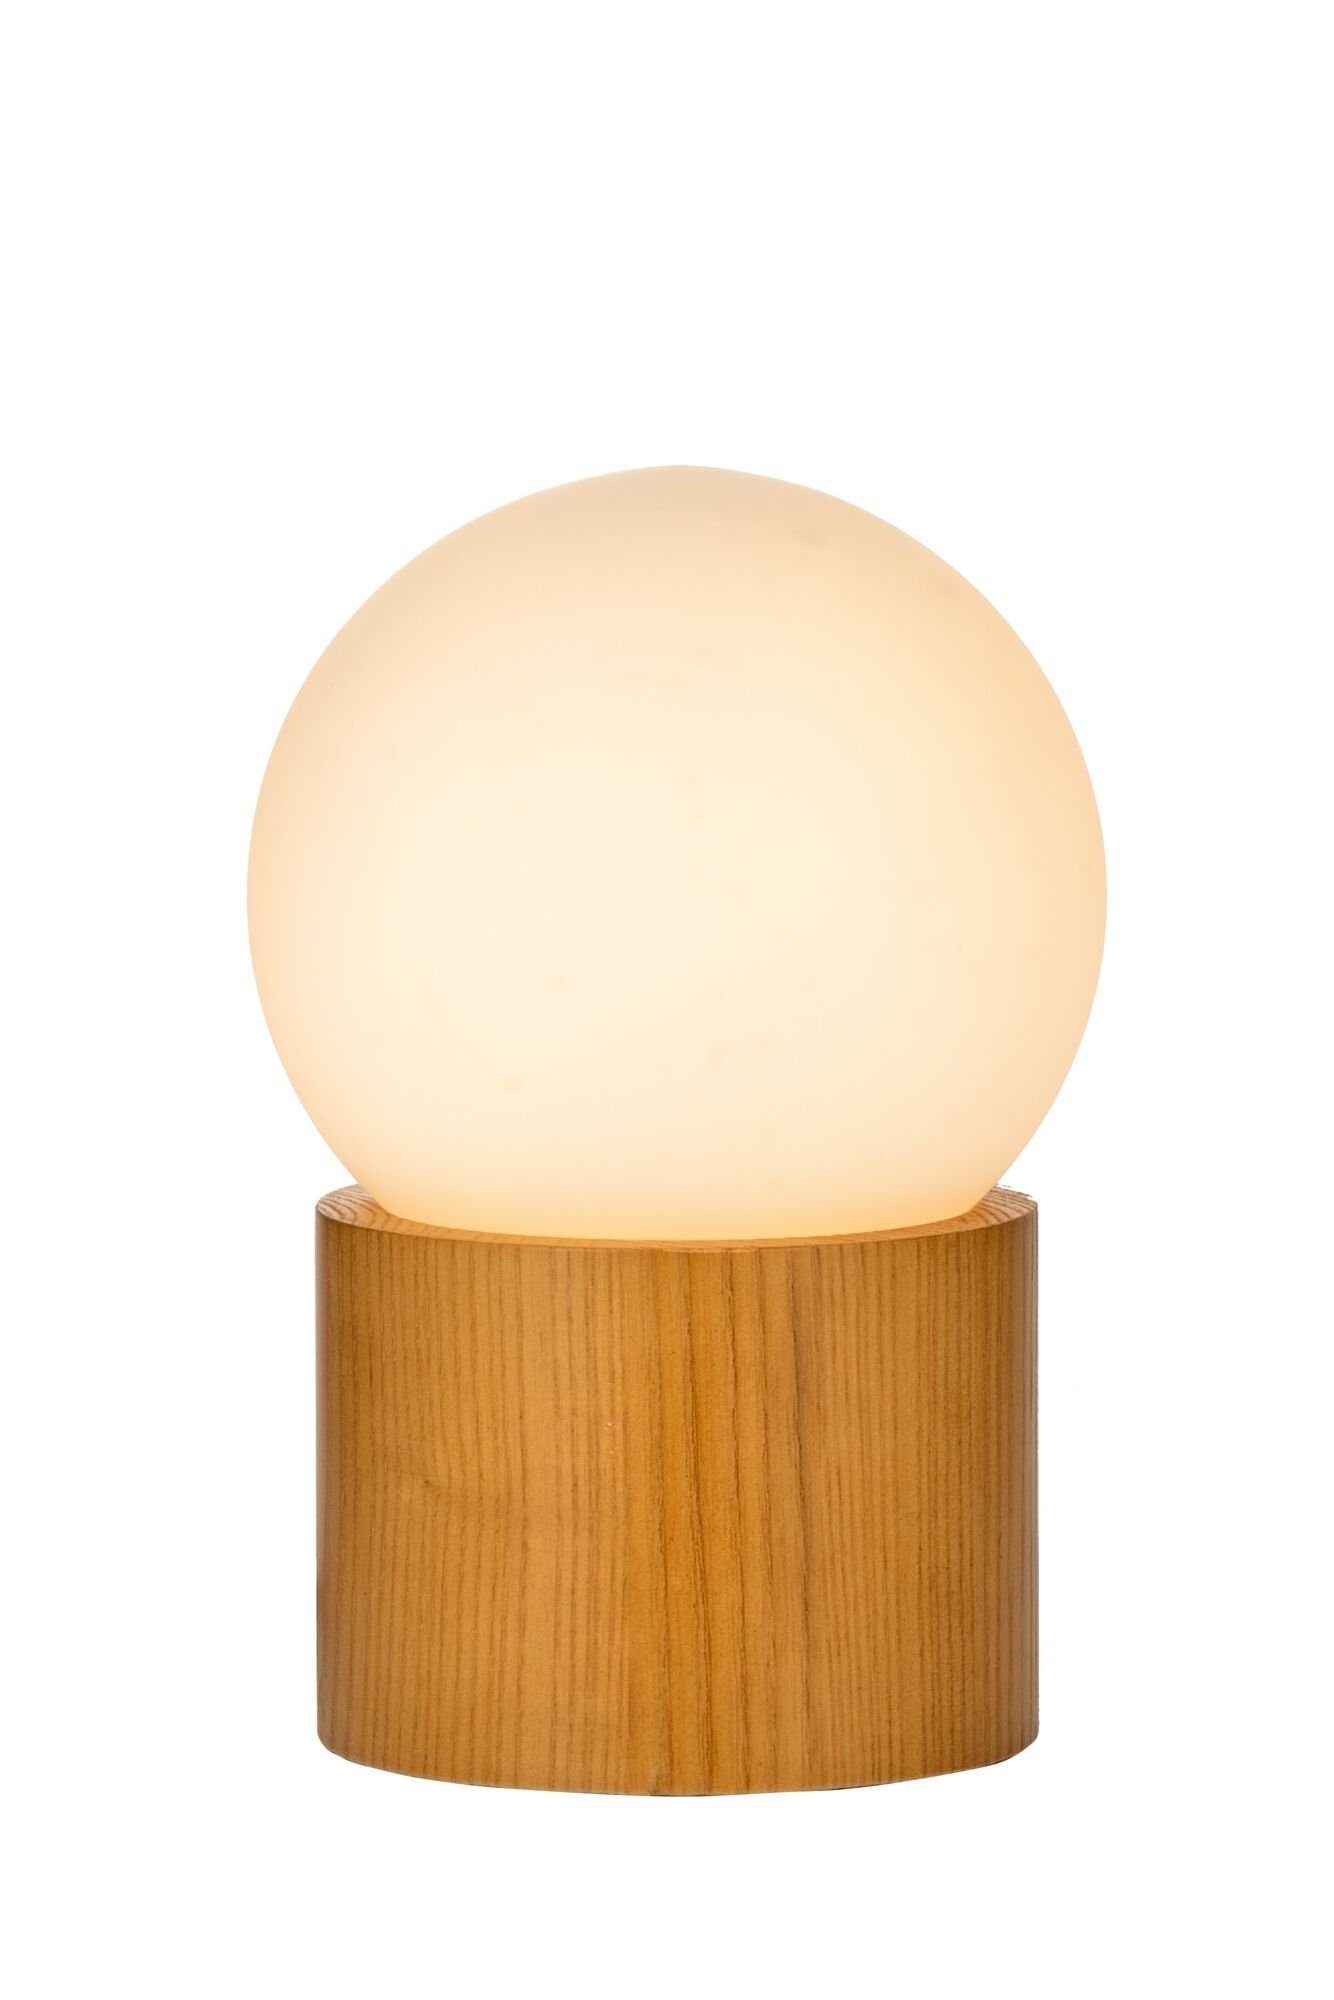 Pauleen Tischleuchte Woody Shine max. Leuchtmittel, G9 ohne Glas/Eschenholz 3,5W Weiß/Holz natur, 230V